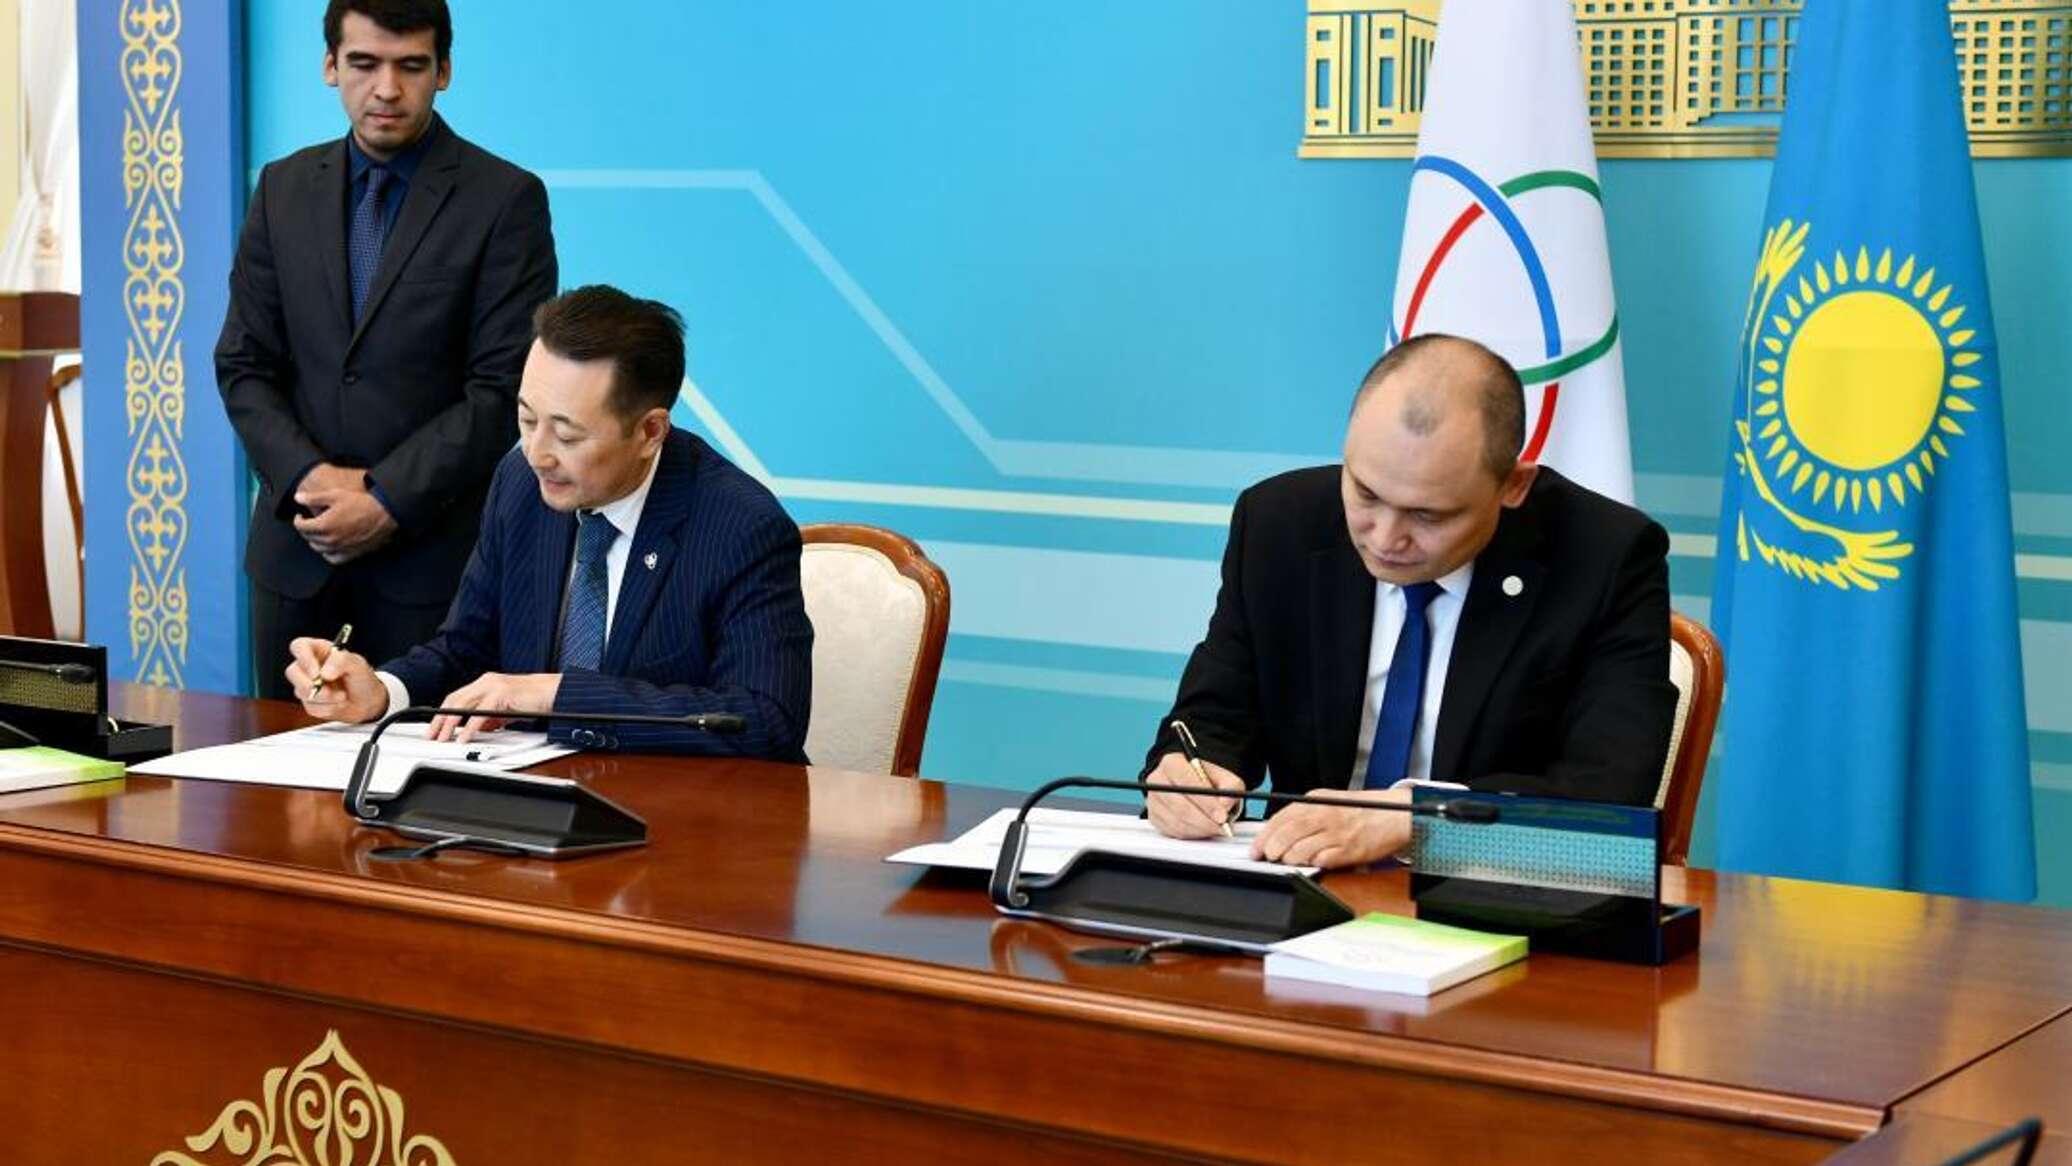 Что будет делать Казахстан как председатель СВМДА